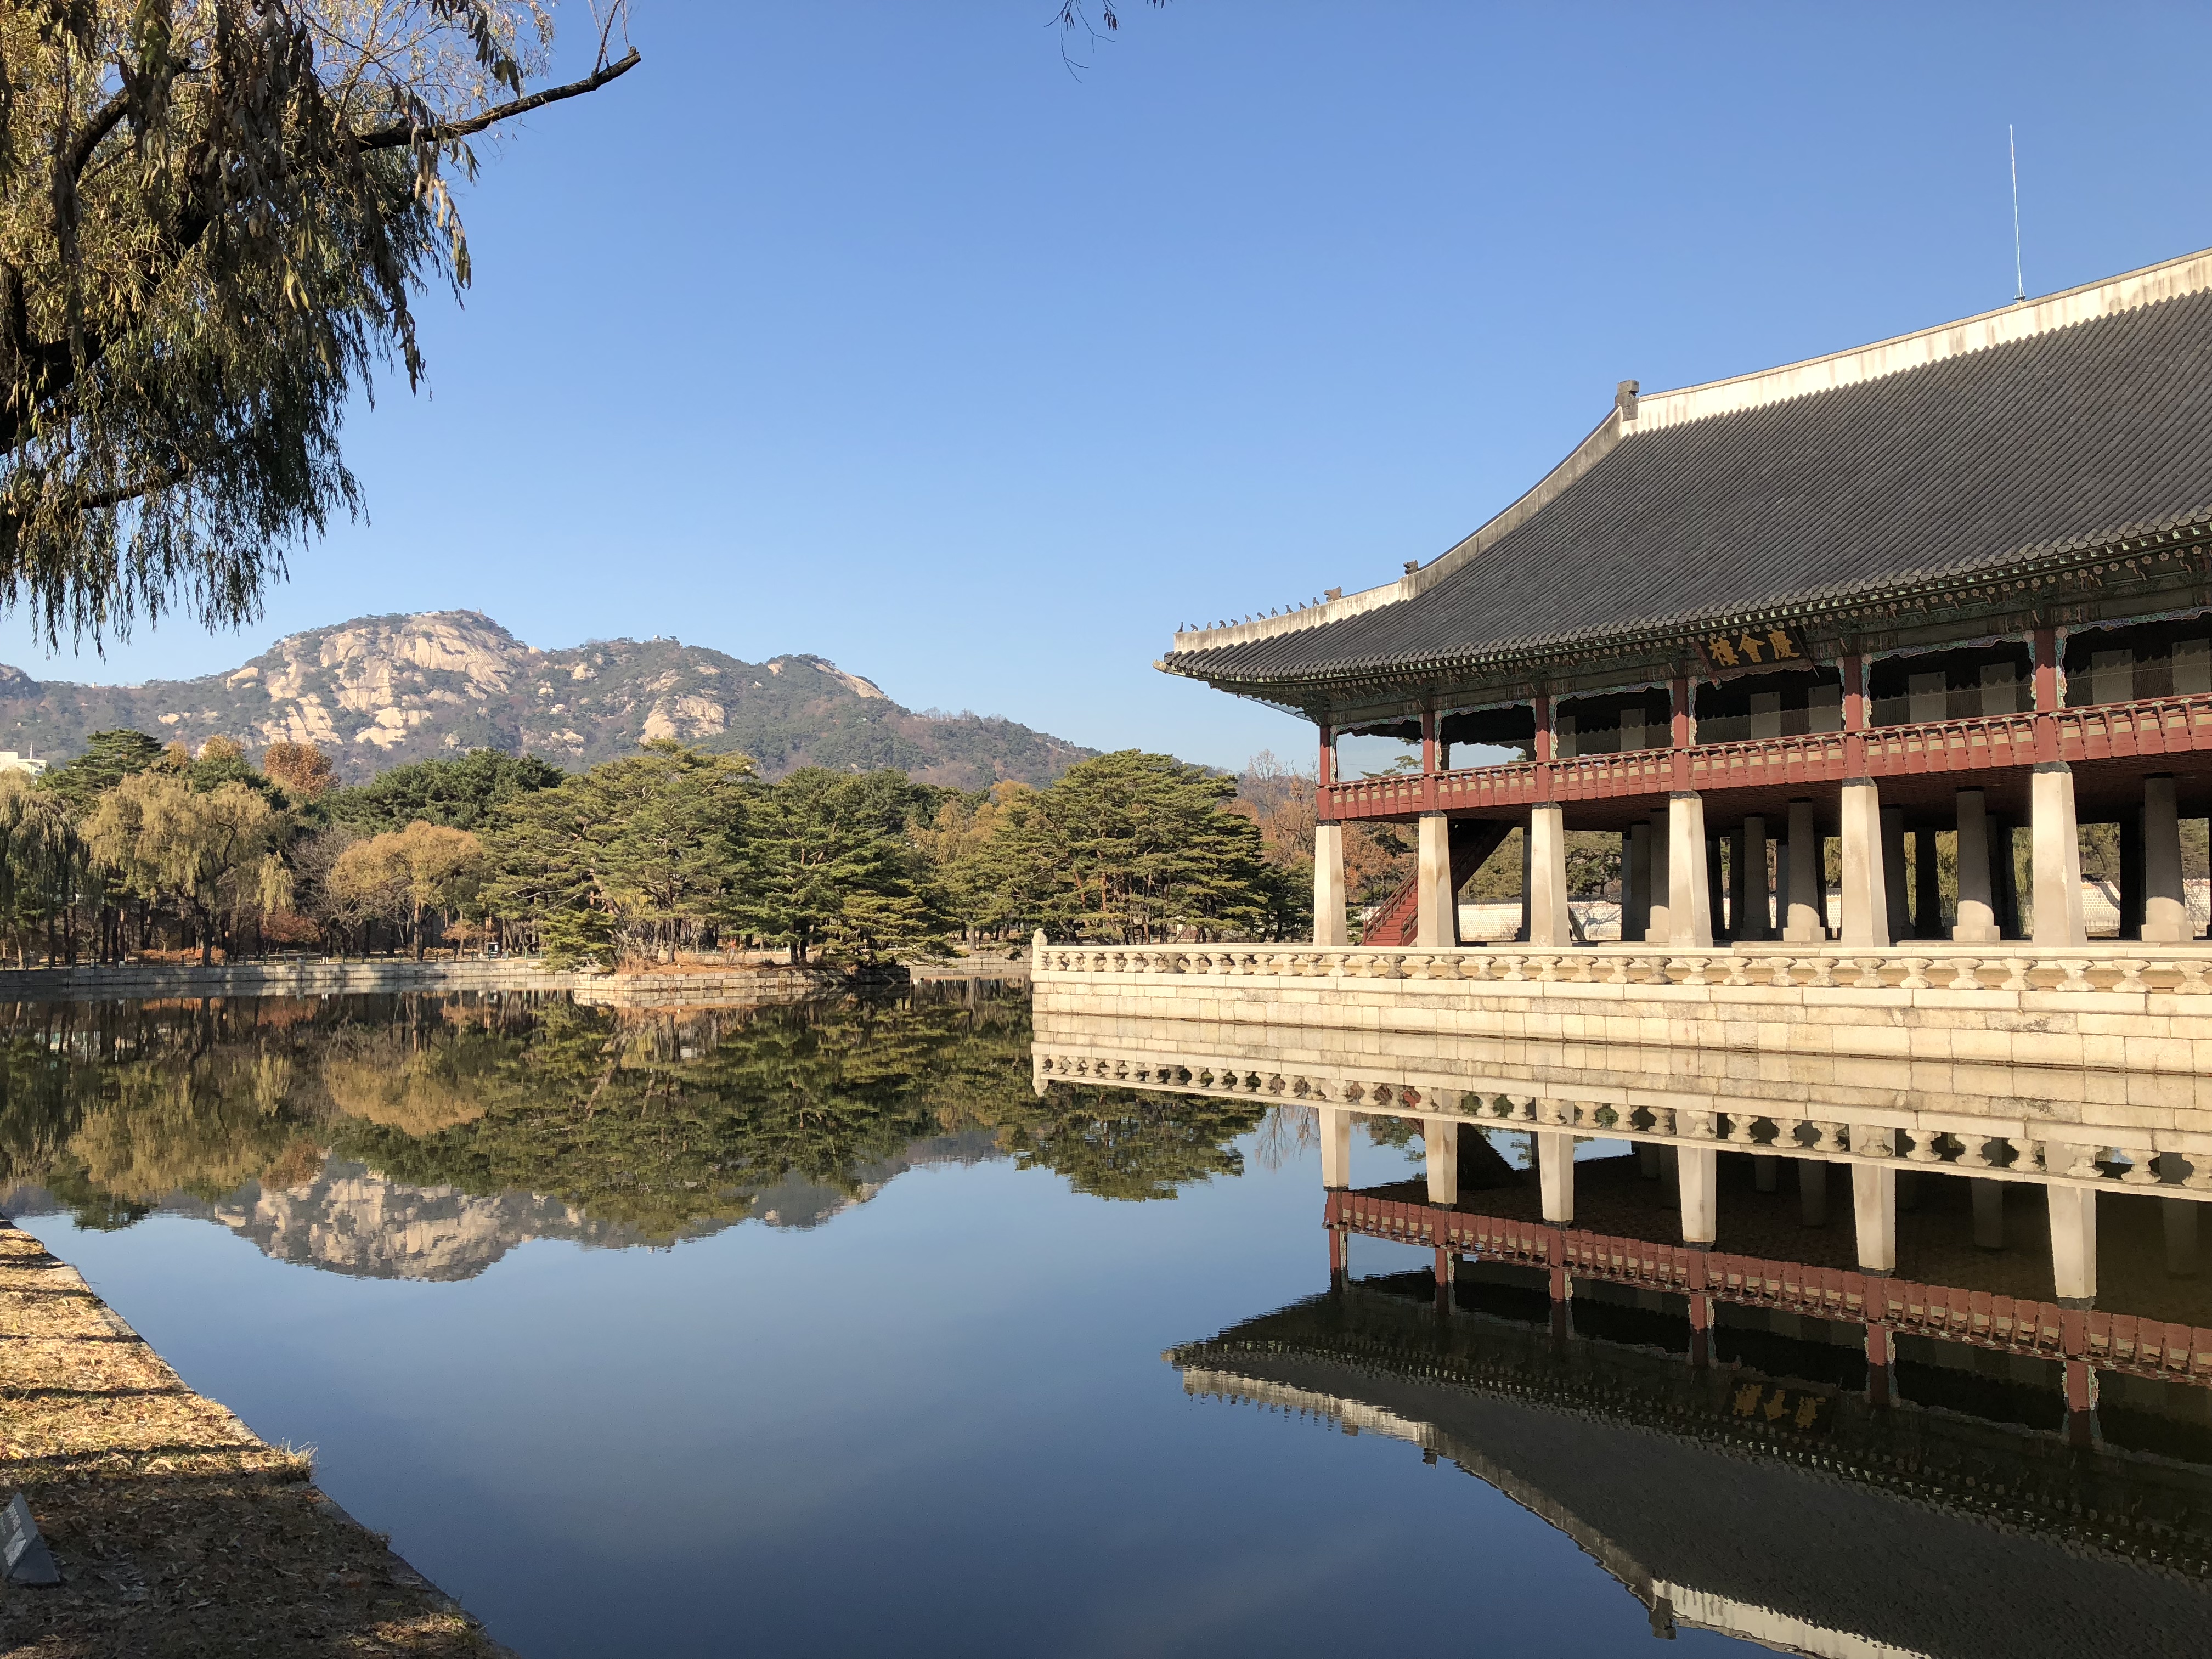 gyeongbokgang palace